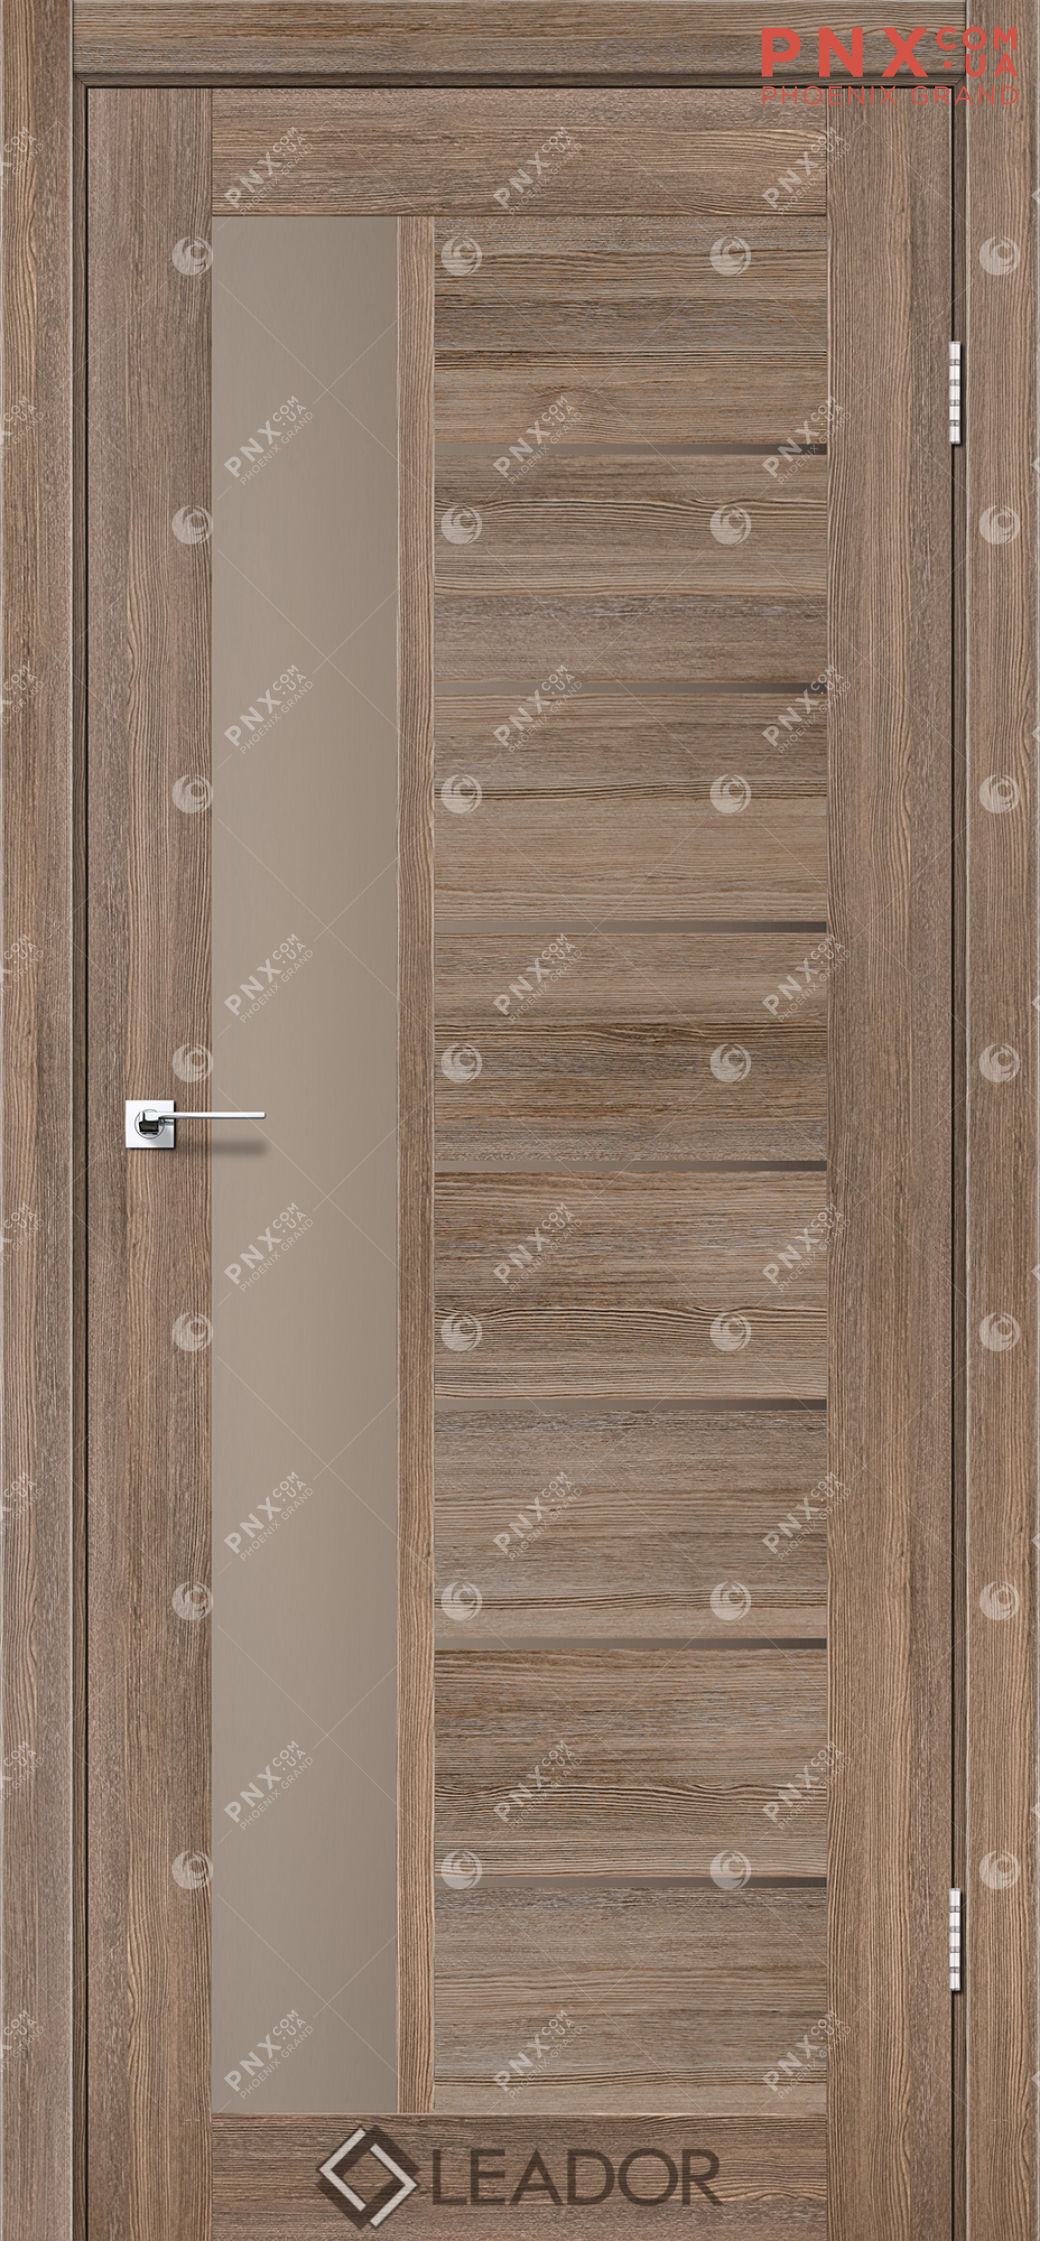 Межкомнатная дверь LEADOR Lorenza, Серое дерево, Стекло сатин бронза